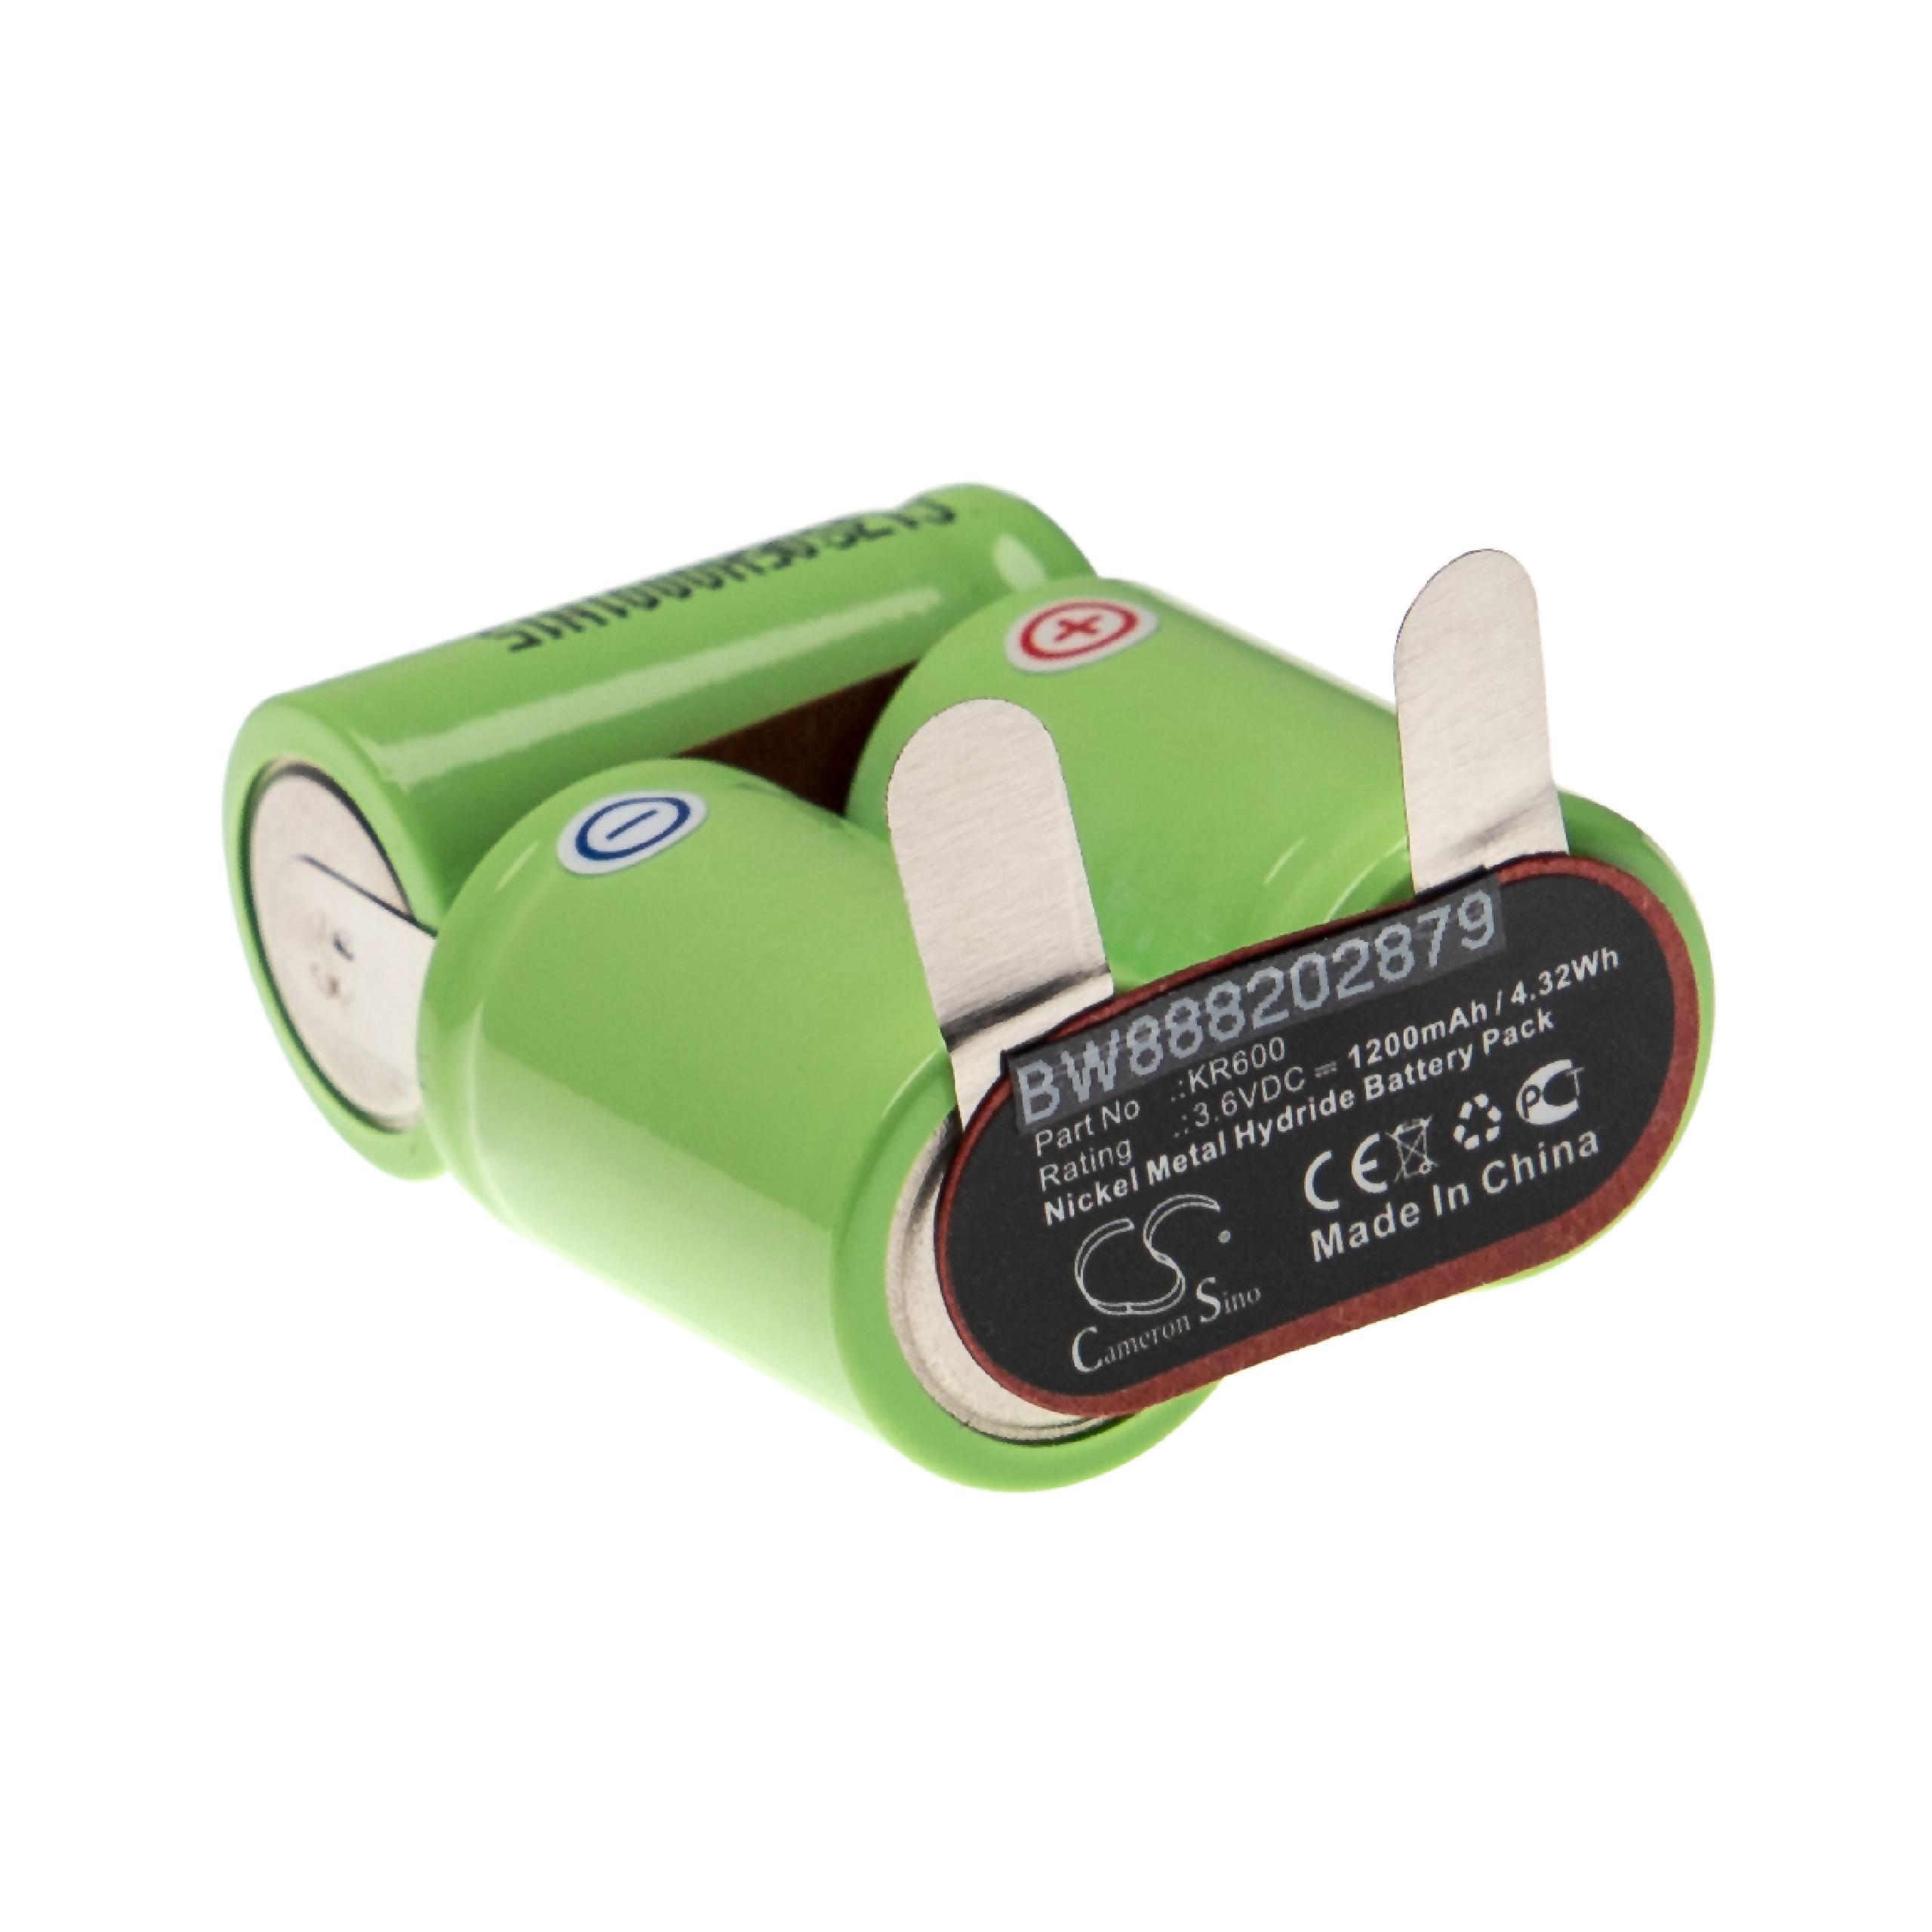 Batterie remplace Wella KR600 pour rasoir électrique - 1200mAh 3,6V NiMH